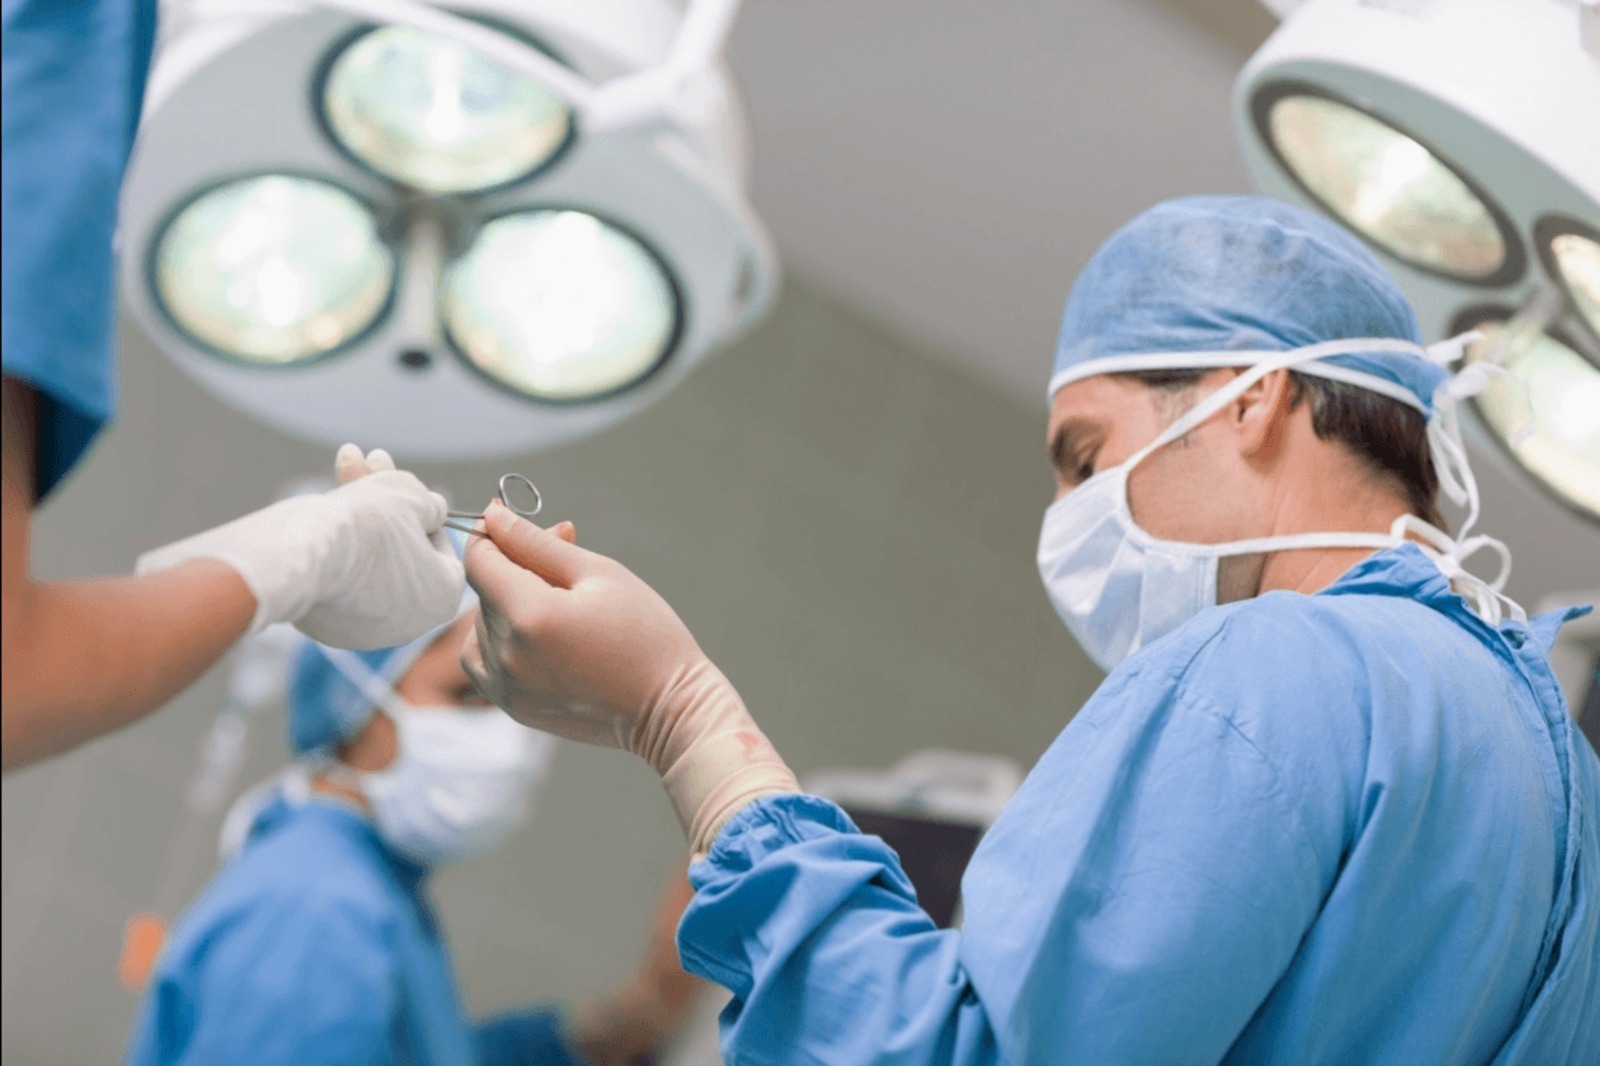 В Башкирии за год провели 54 операции по пересадке органов